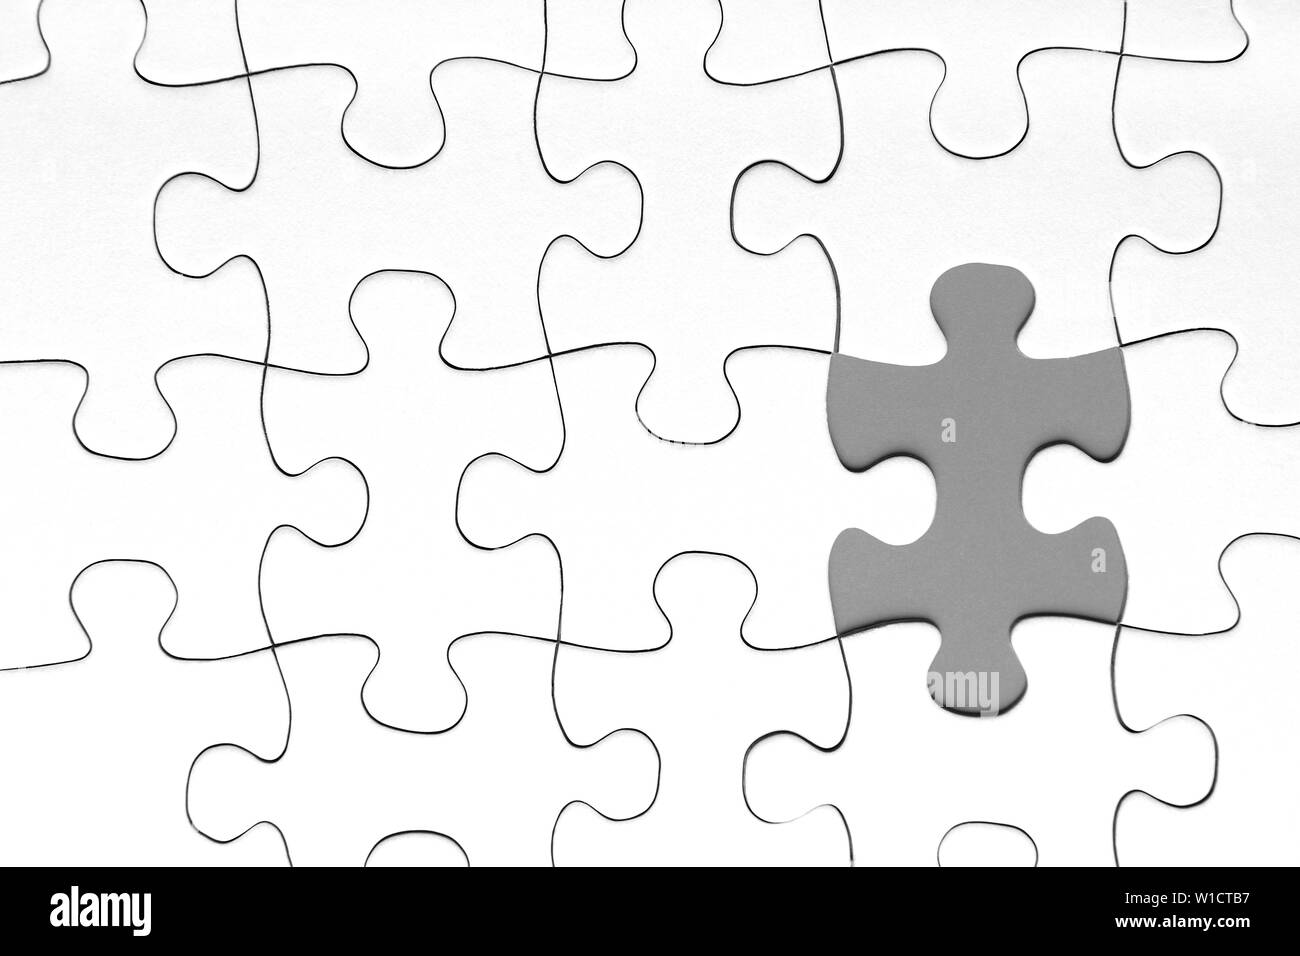 Grau Puzzleteil in zwischen der weißen Puzzleteile, Business Konzept Stockfoto